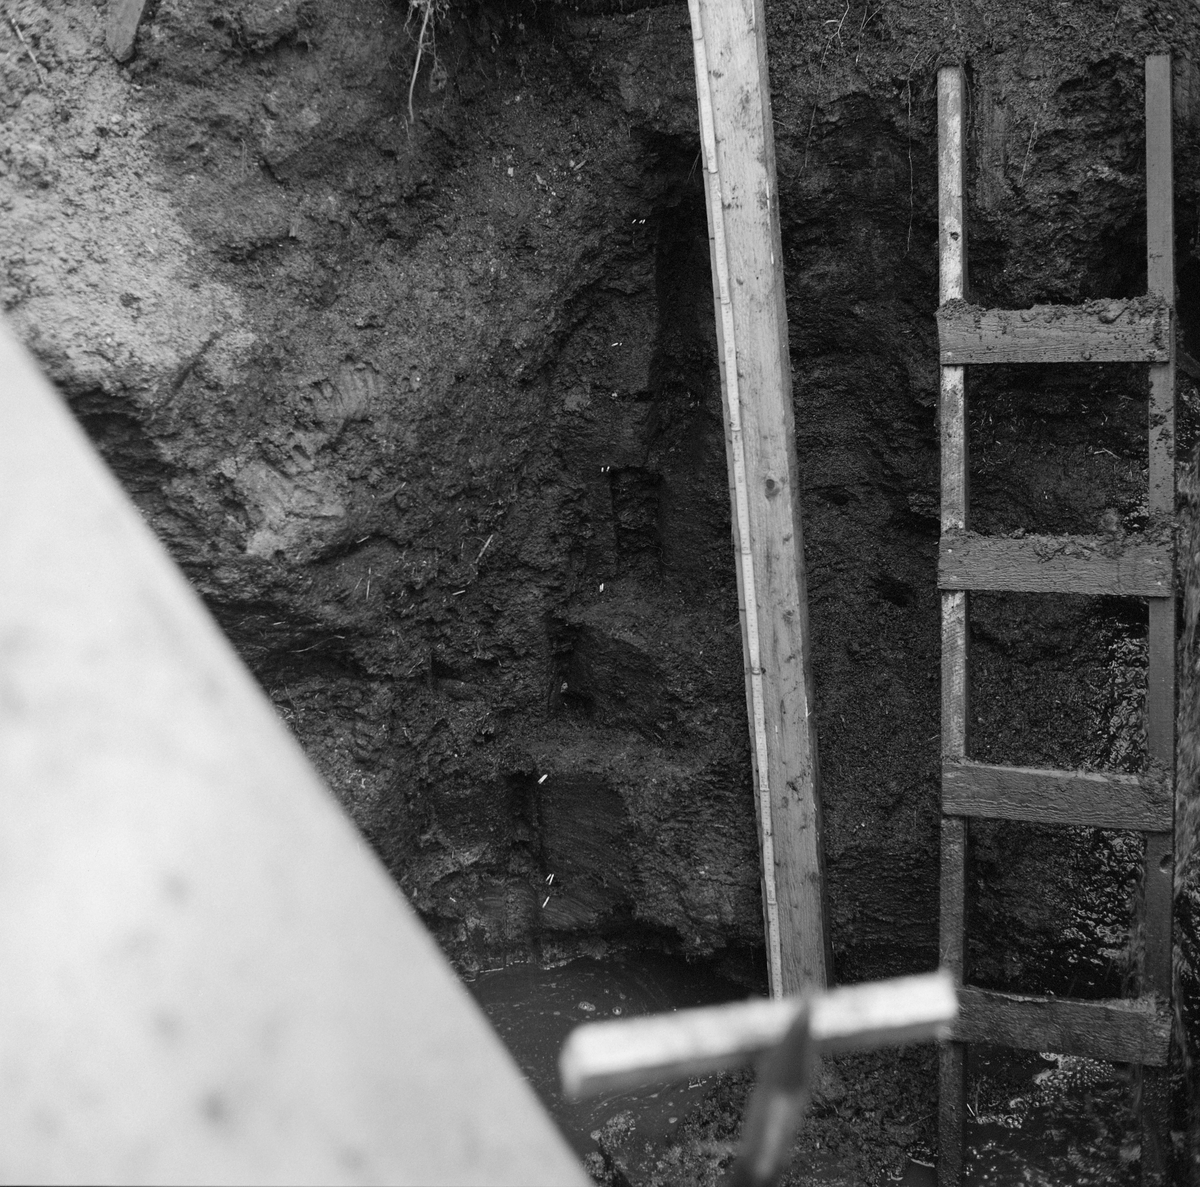 Fra ei nedgravd grop på et av jordene på Hov i Løten i Hedmark, der det nylig var nedsatt en kloakkum (nederst til venstre på dette fotografiet). Under gravearbeidene som var nødvendige for å få denne kummen djupt nok ned i bakken fant Johan Skårholen et elggevir i bemerkelsesverdig stor dybde i jordlagene. En C14-analyse indikerte at geviret var om lag 8 500 år gammelt. Denne dateringa, og et gevirfunn med nesten like høy alder et par hundre meter unna noen få år tidligere, bidro til at det var interesse for å foreta supplerende naturhistoriske undersøkelser på funnstedet. Ekteparet og kollegene Kari og Gunnar Henningsmoen fra Universitetet i Oslo kom til Løten for å ta jordprøver 7. og 8. september 1974. Målet var å bruke prøvene i et pollenanalytisk prosjekt som skulle kartlegge biologiske forhold på funnstedet gjennom årtusener. Til høyre i bildet ser vi en stige forskerne brukte når de skulle hente ut prøver fra jordsmonnet etter et stratigrafisk system. Bordet som sto ved sida av stigen ble brukt som anlegg for en to meter lang tommestokk som ble brukt til å måle avstanden fra bakkenivået ned til de punktene der det ble hentet ut jordprøver. 

Se fanen «Opplysninger» og litteraturreferansene til dette fotografiet.